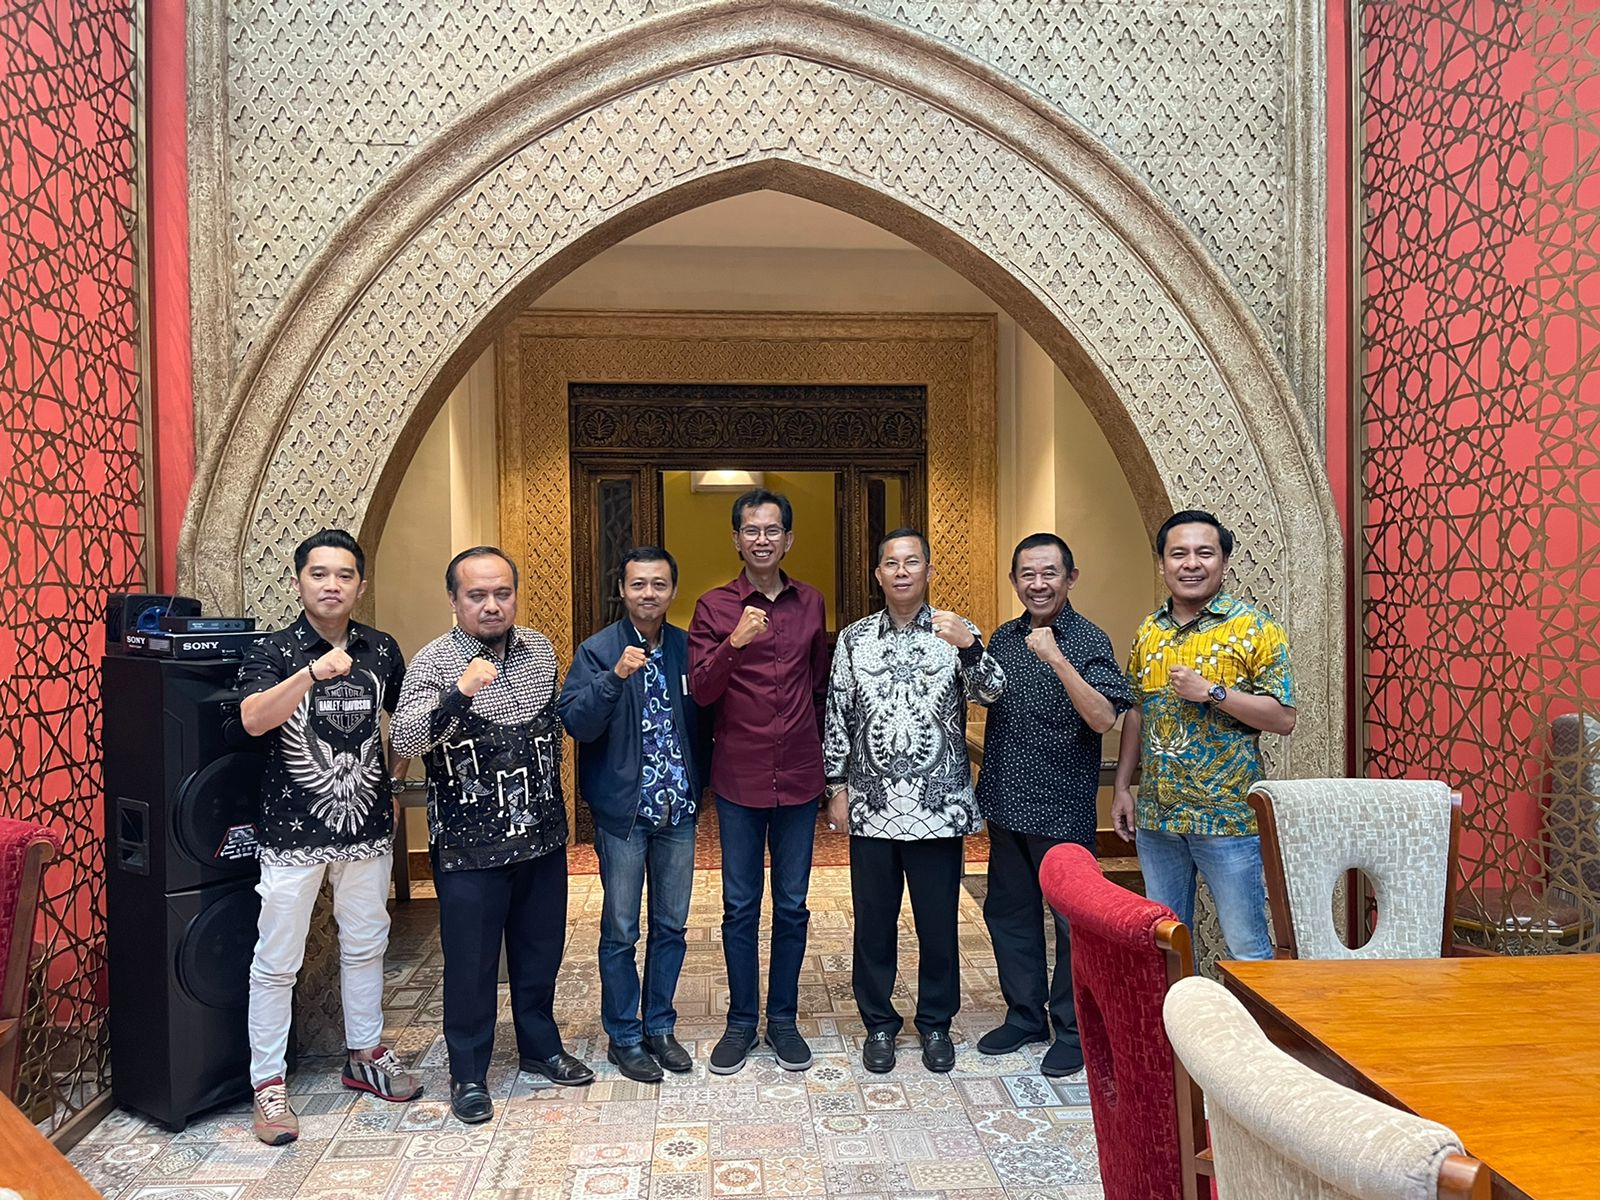 Ketua Parpol Surabaya Kembali Bertemu, Adakan Halal Bihalal Hingga Bahas Pemulihan Ekonomi